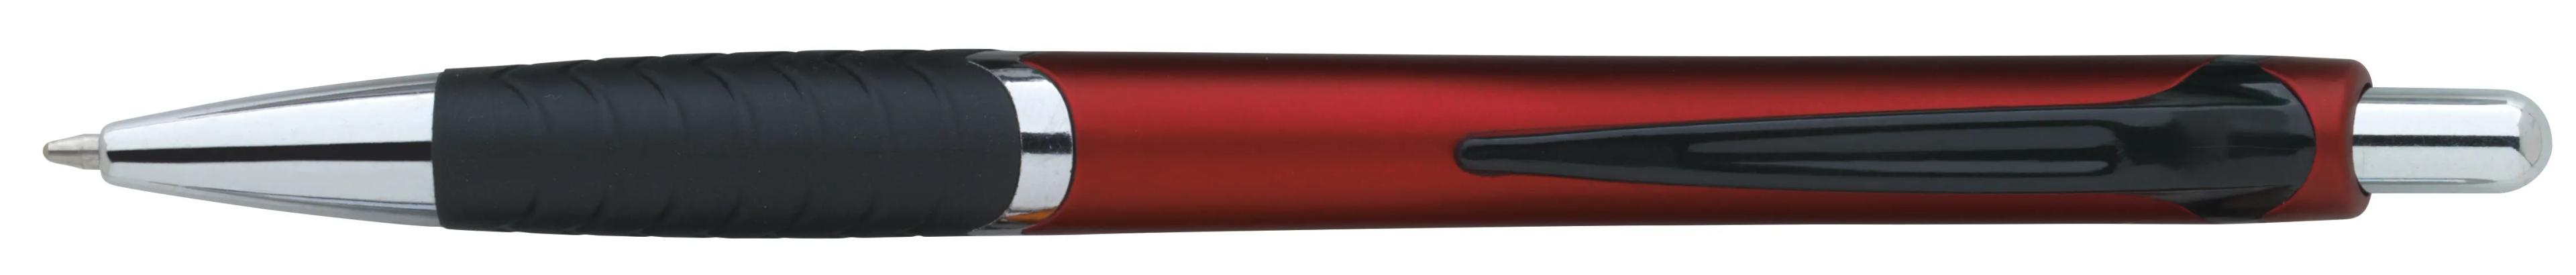 Arrow Metallic Pen 12 of 43